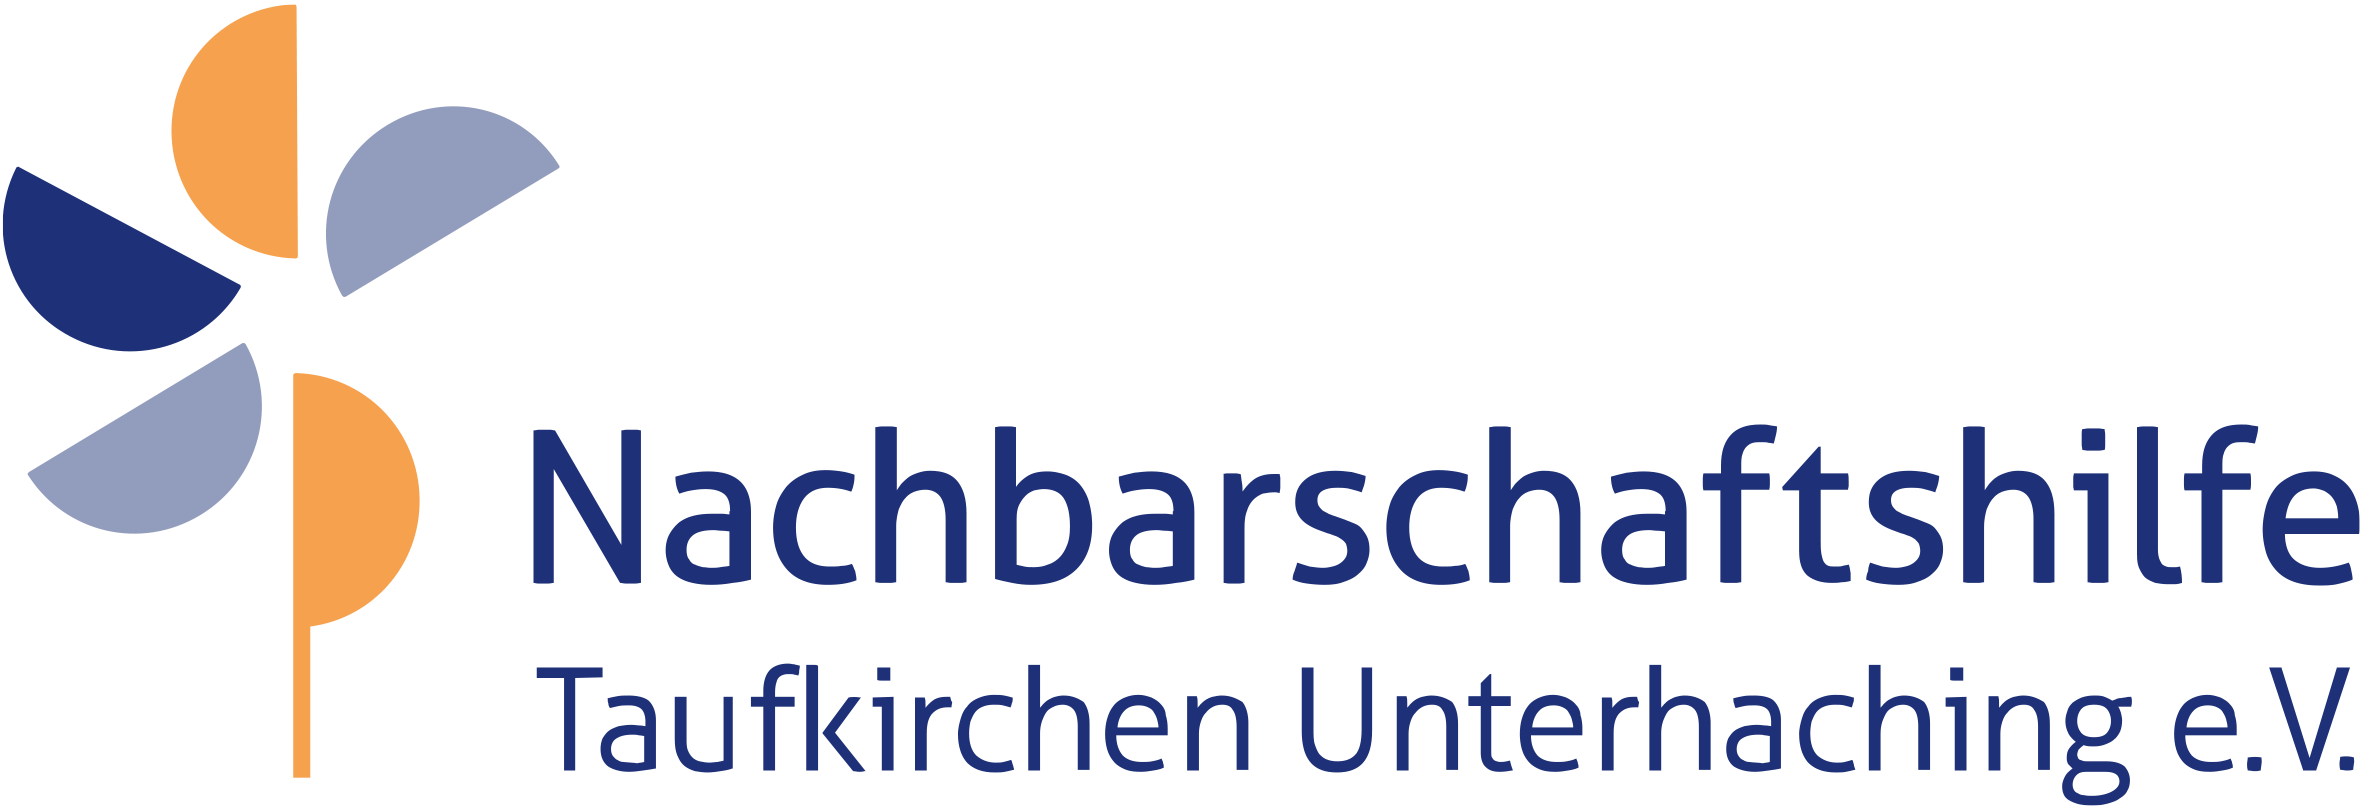 Nachbarschaftshilfe Taufkirchen Unterhaching - Schnupfenfee